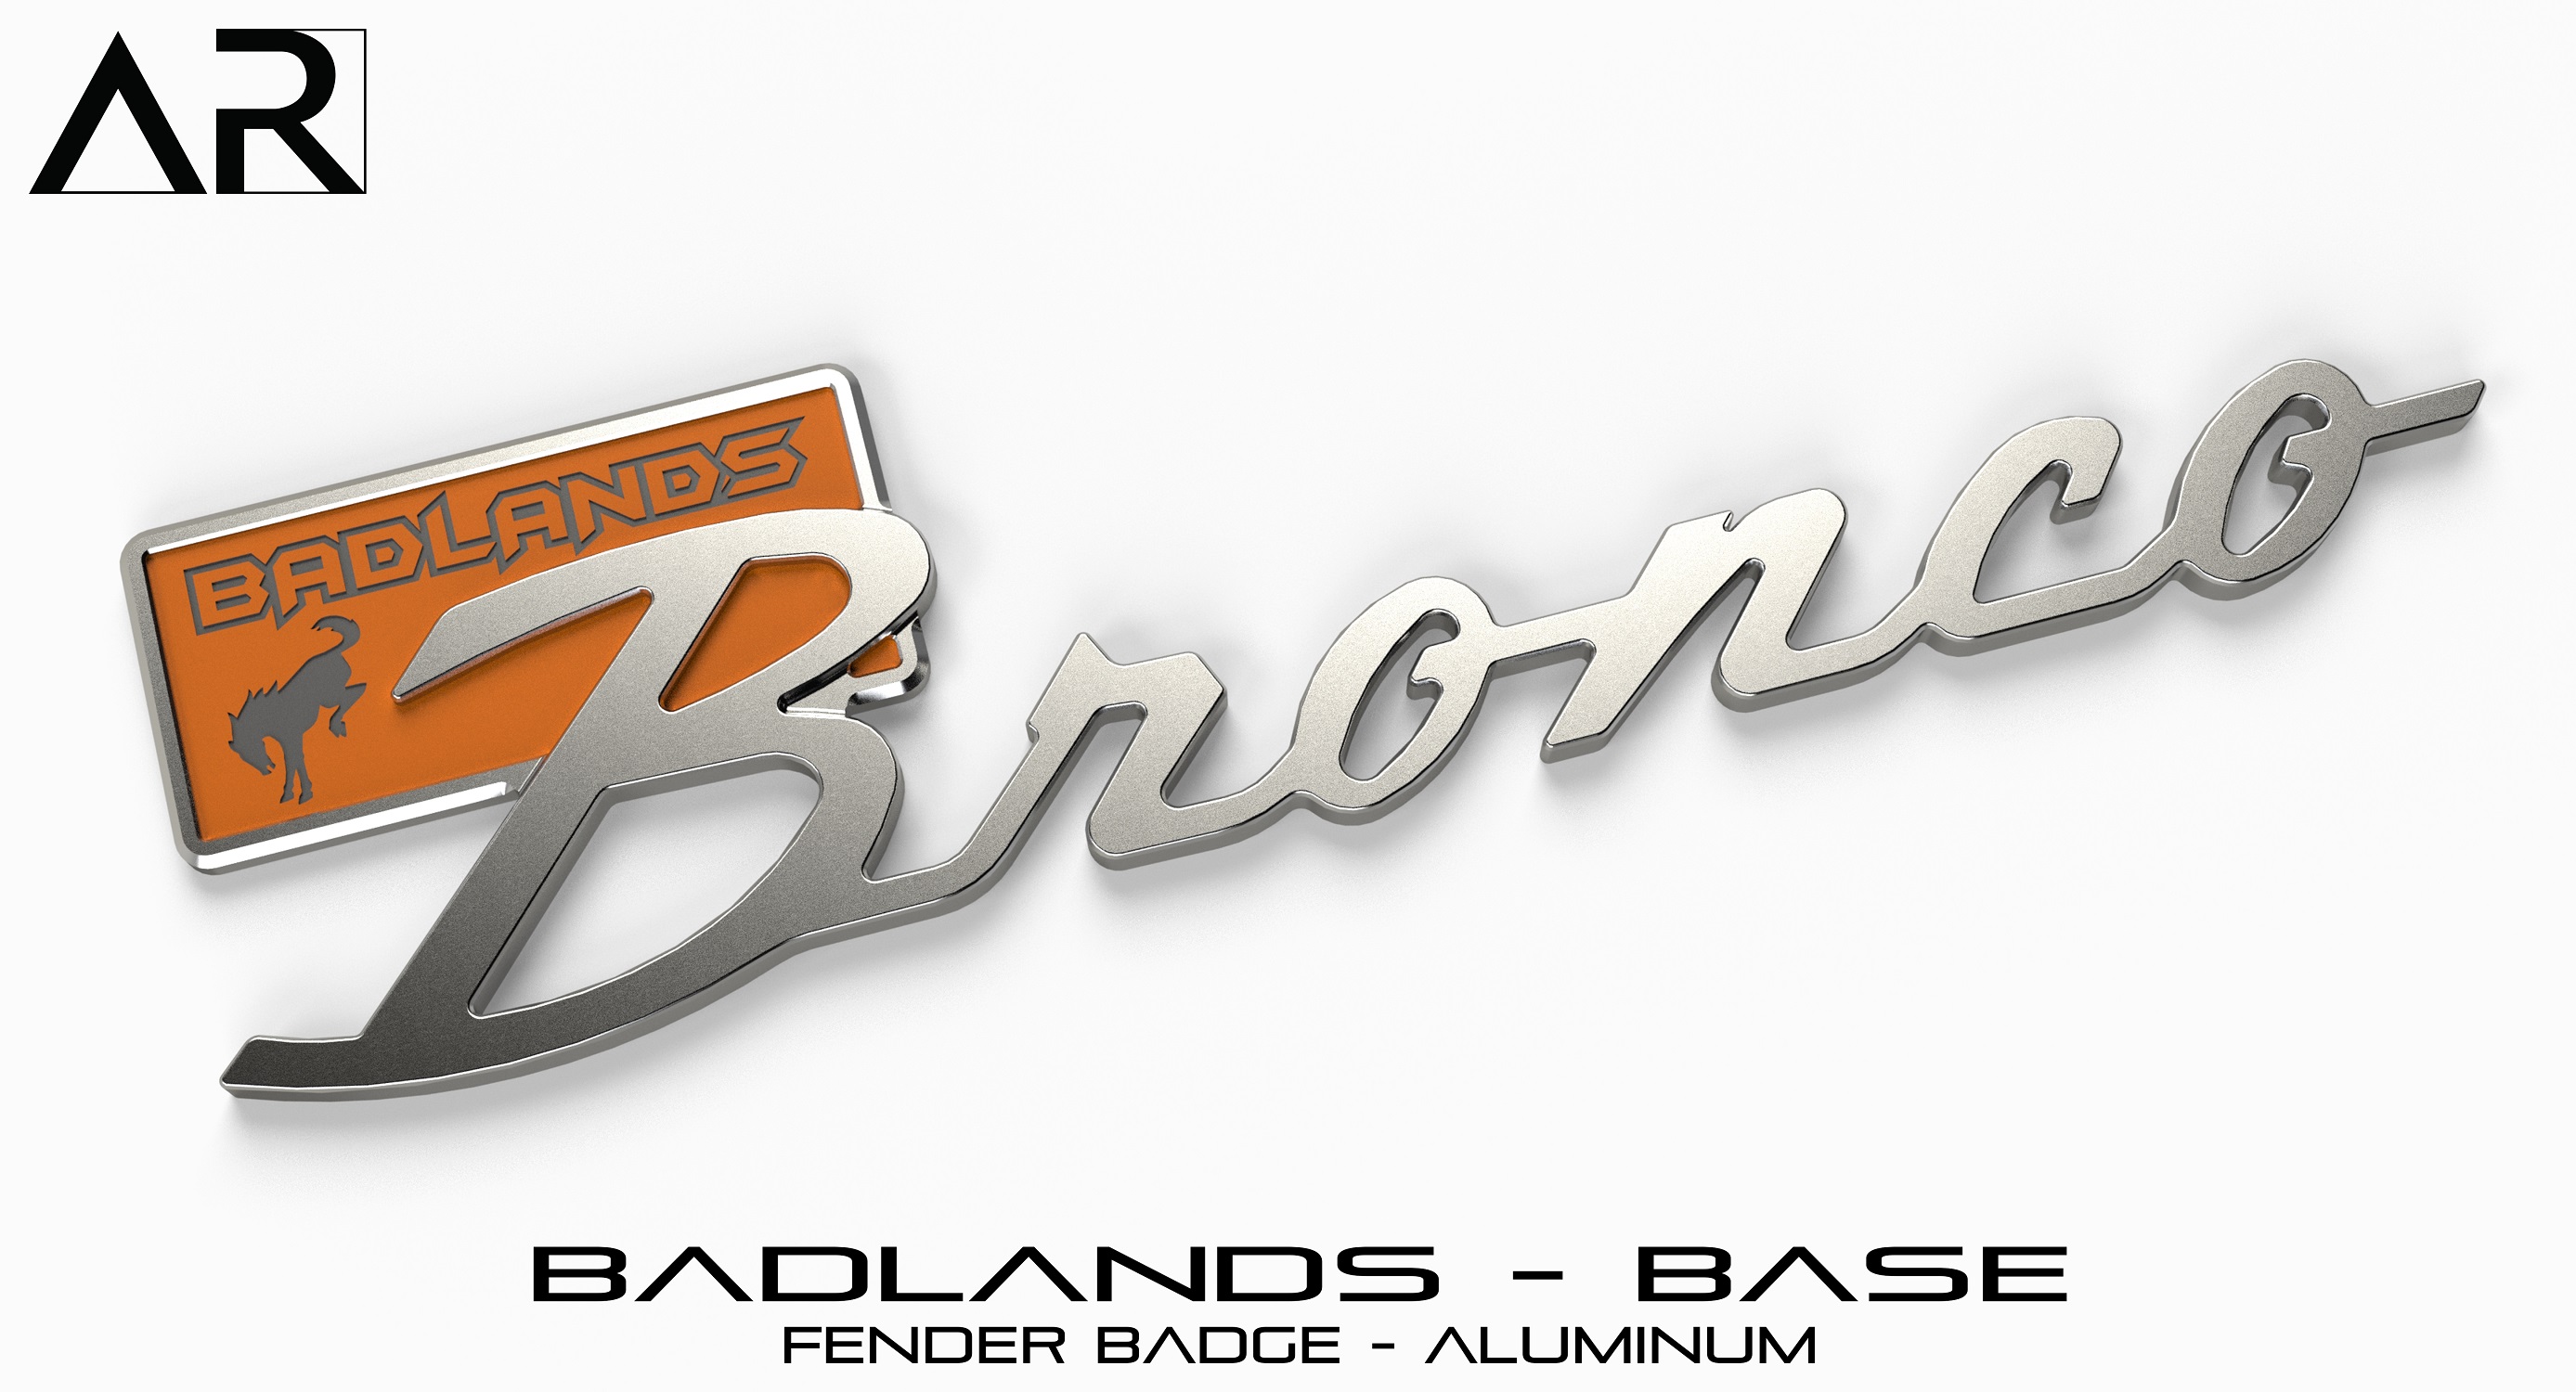 Ford Bronco AR | BRONCO CLASSIC DNA Fender Badge 1601004_B - Fender Badge - Badlands Base - Aluminum